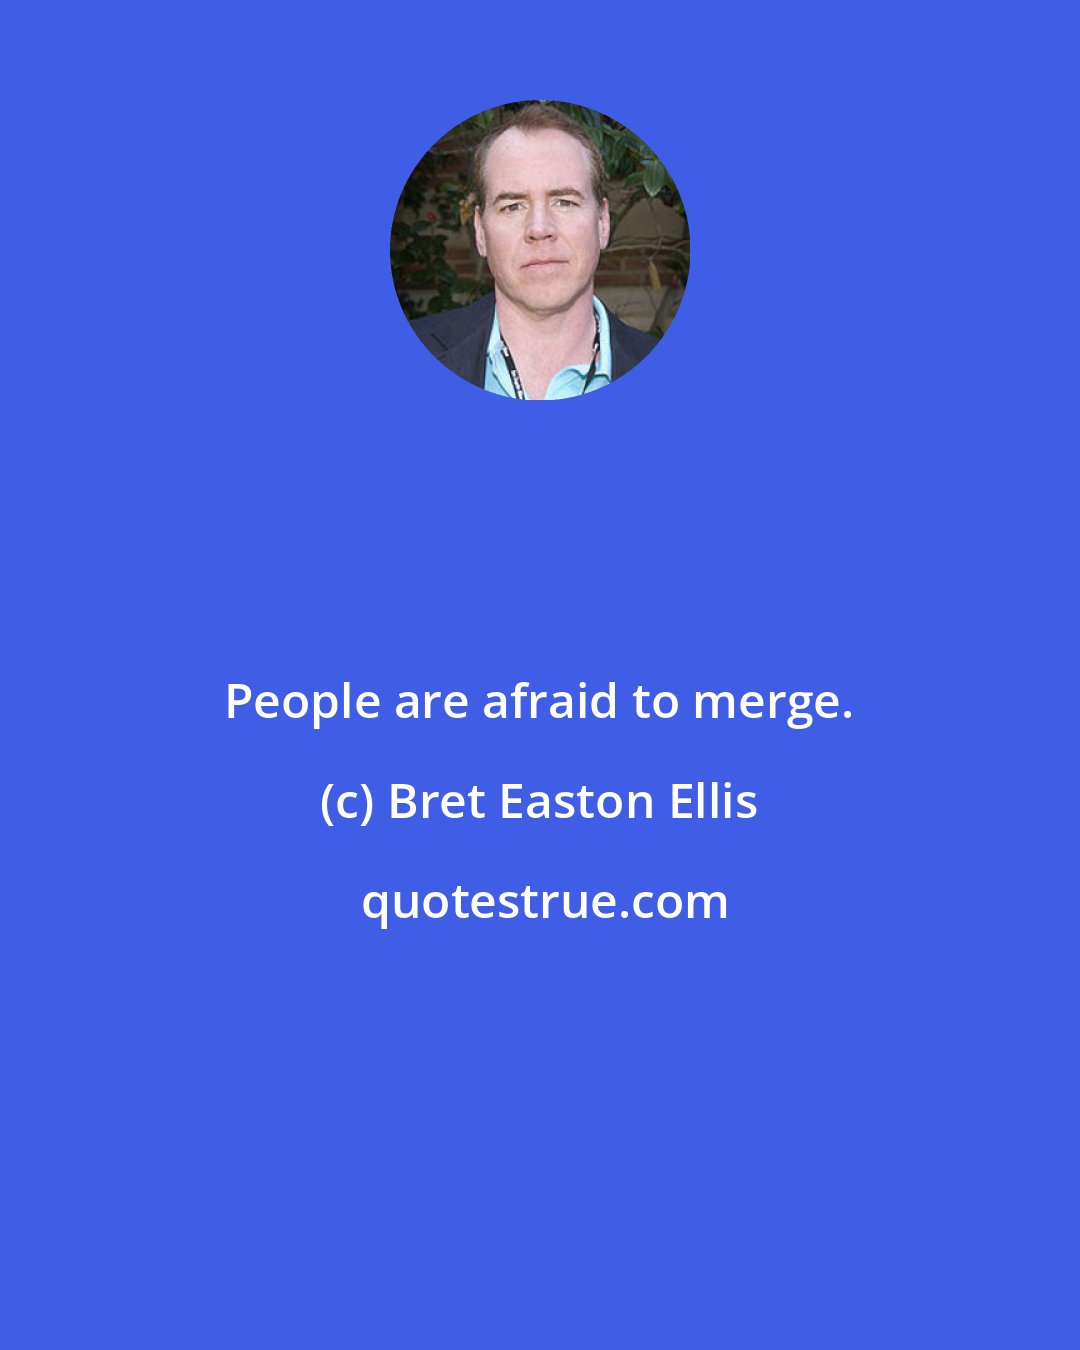 Bret Easton Ellis: People are afraid to merge.